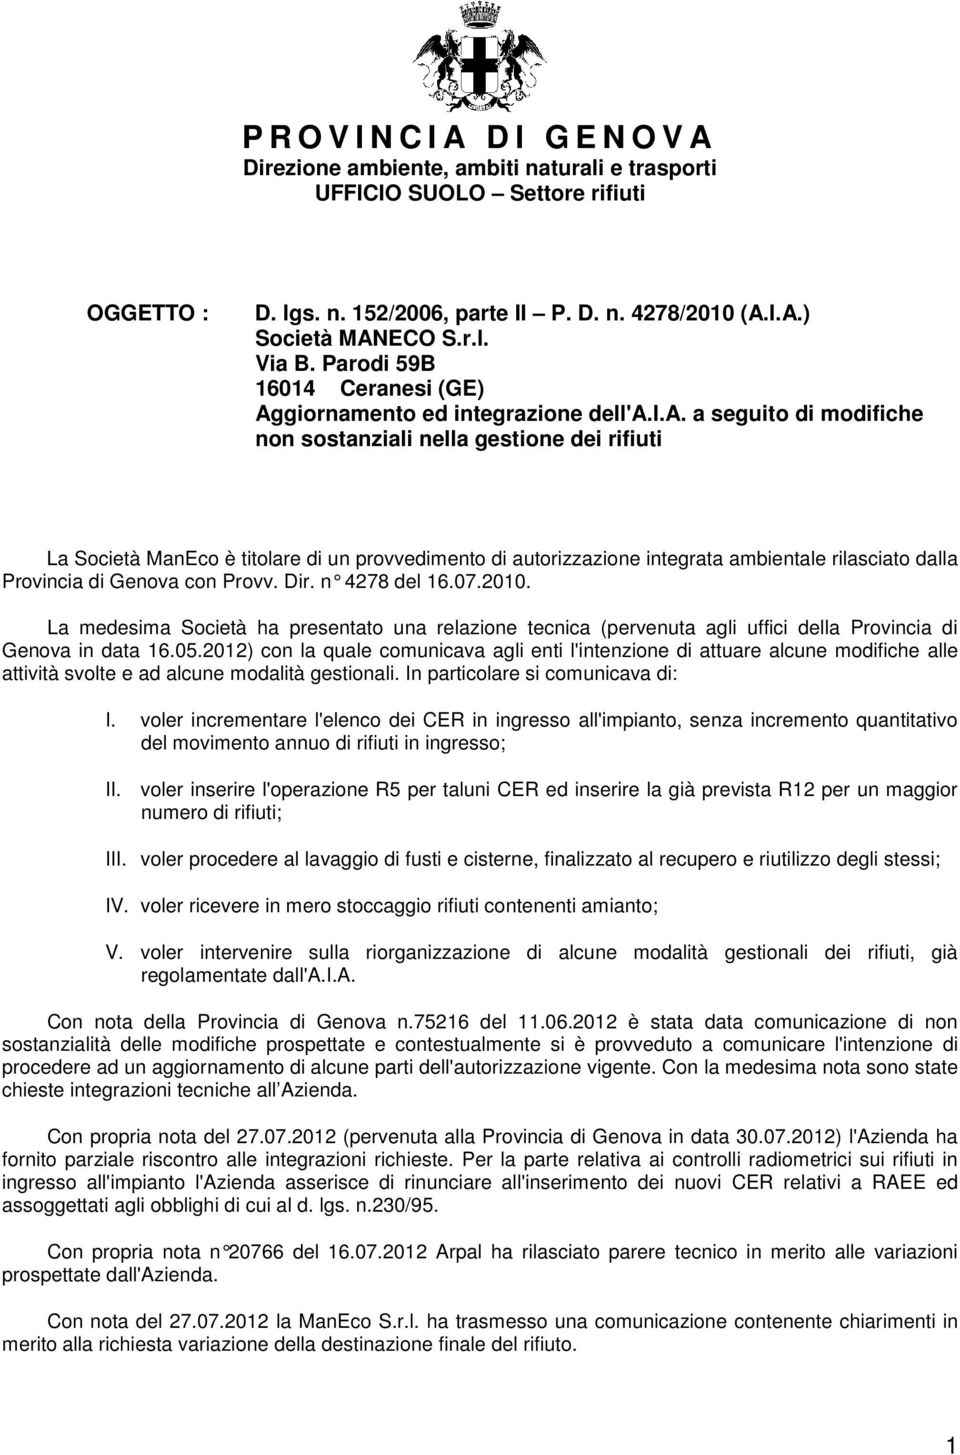 autorizzazione integrata ambientale rilasciato dalla Provincia di Genova con Provv. Dir. n 4278 del 16.07.2010.